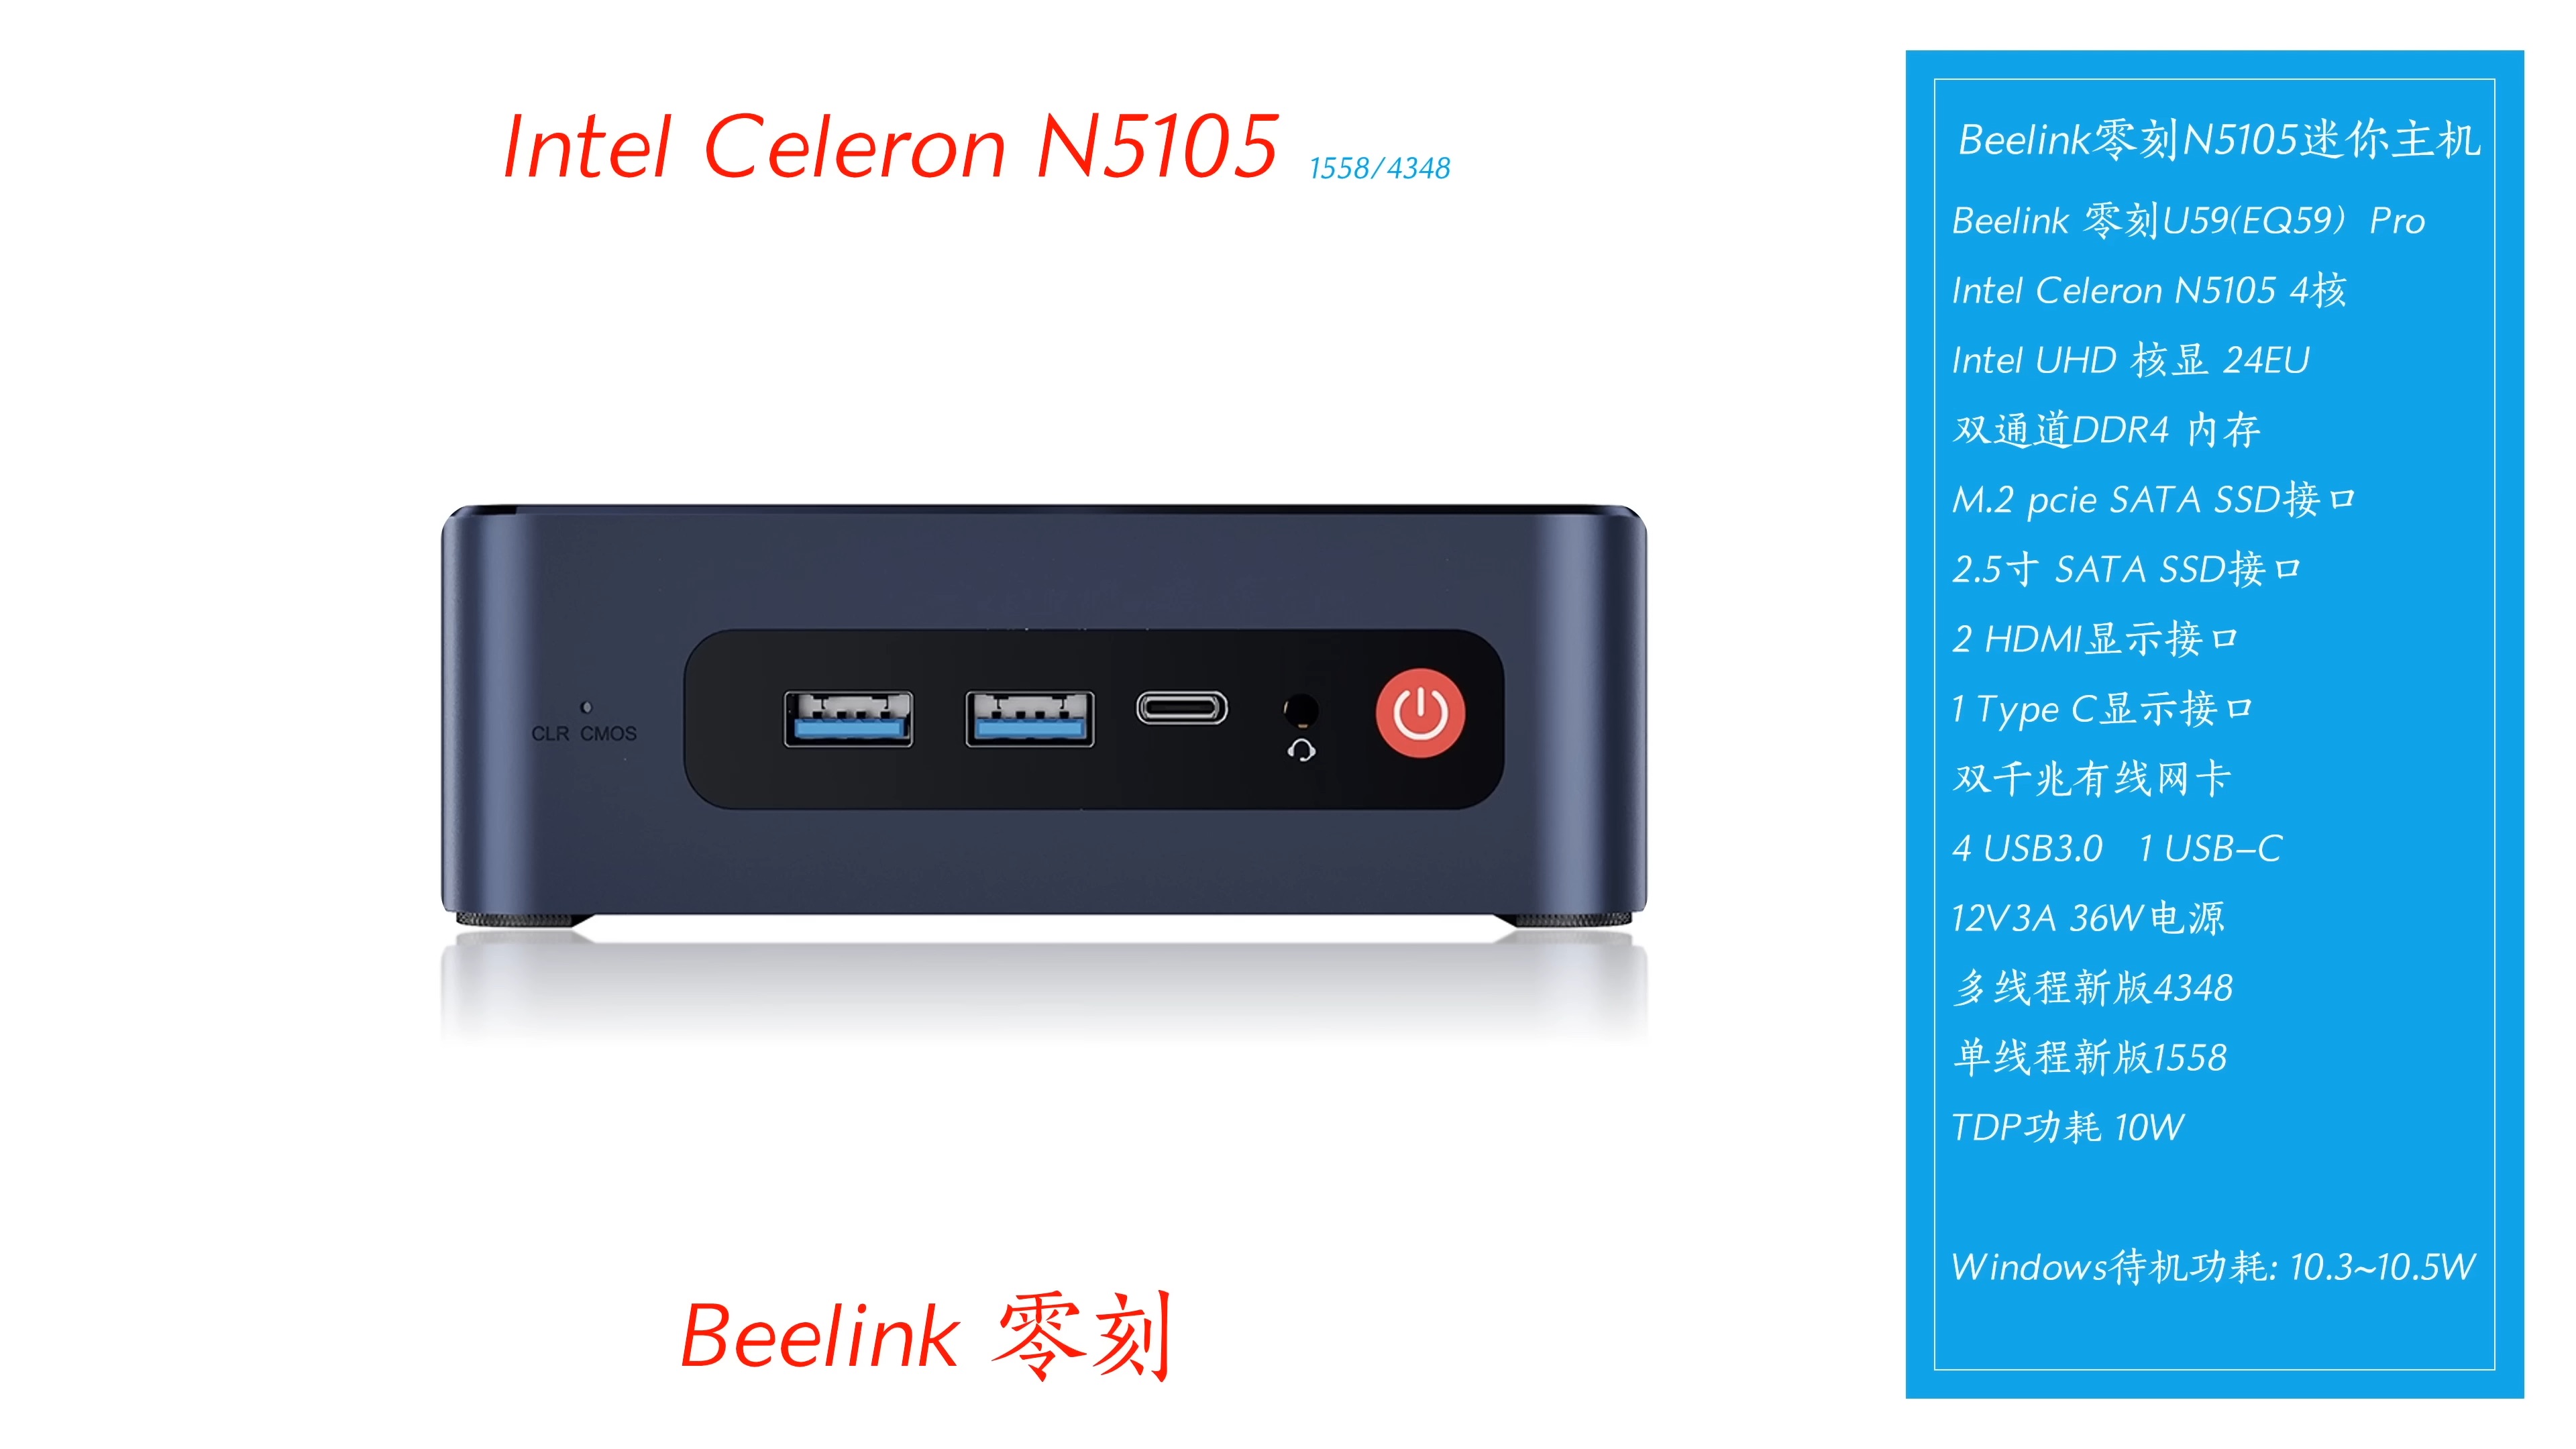 【한국어 자막】 Beelink의 가장 저렴한 비즈니스 미니 PC! U59 Pro N5105 듀얼 기가비트 미니 PC! 9-28 screenshot.jpeg